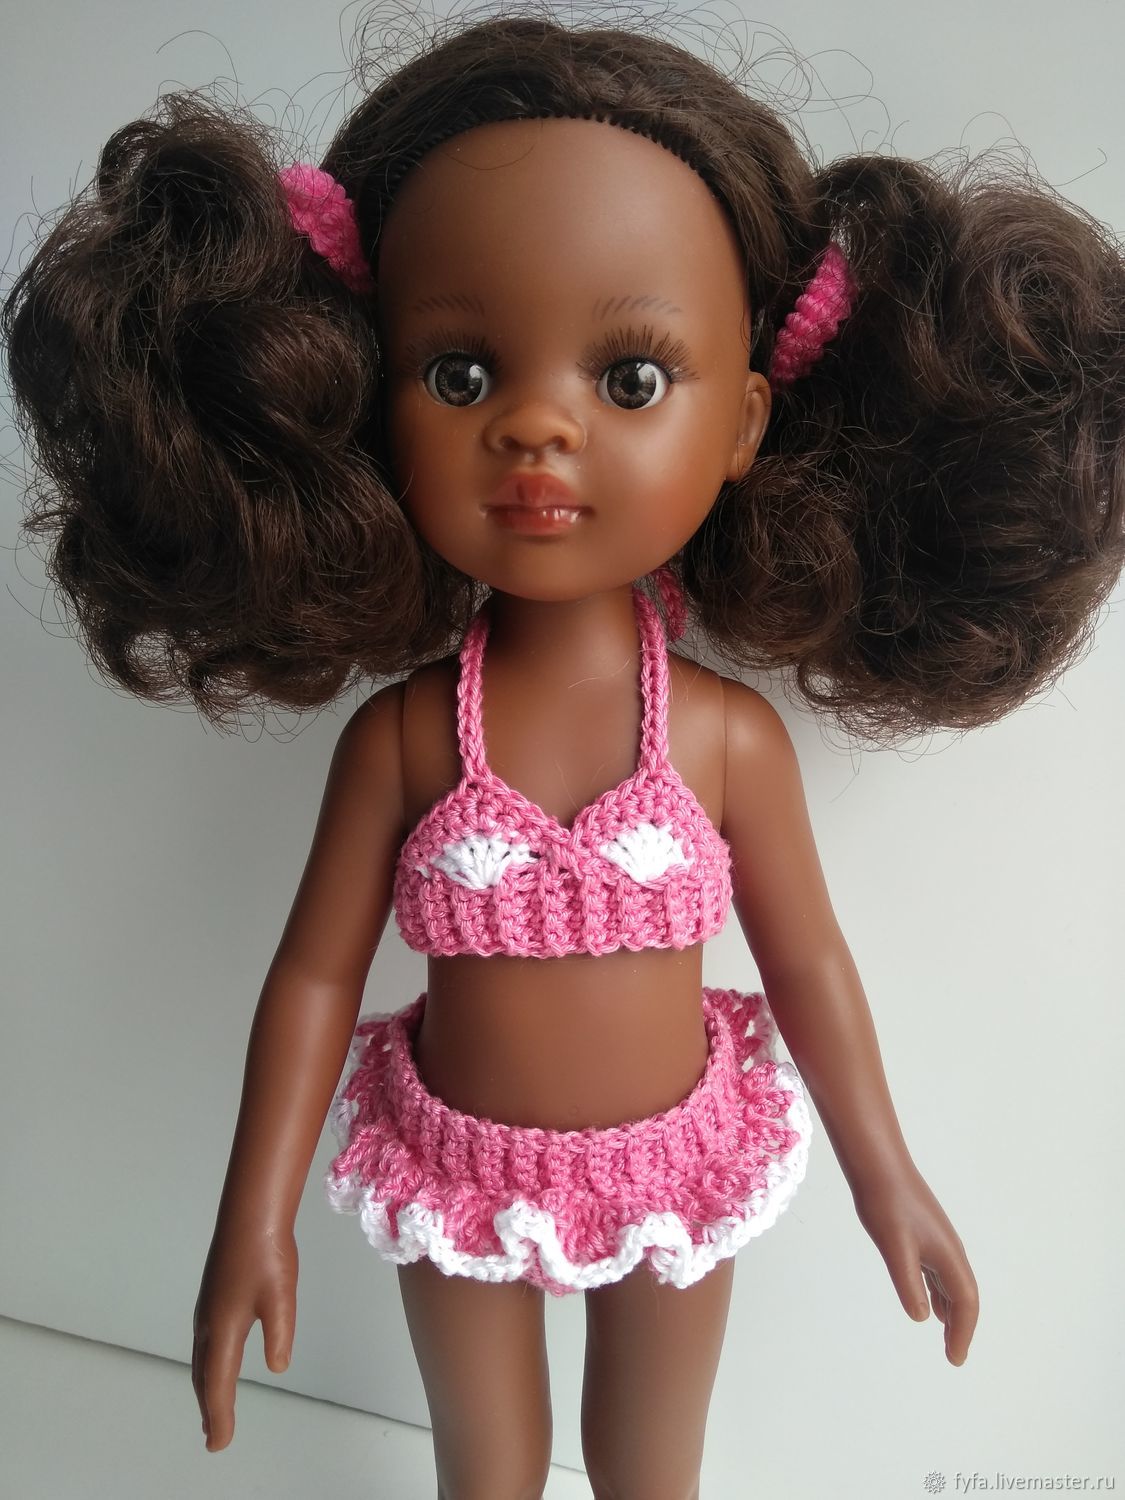 Одежда для кукол 32 см. Купальник для куклы Паола Рейна. Одежда для куклы Паола Рейна 32 см купальник. Одежда для кукол Паола Рейна 32 см. Одежда для куклы Паола Рейна купальник.